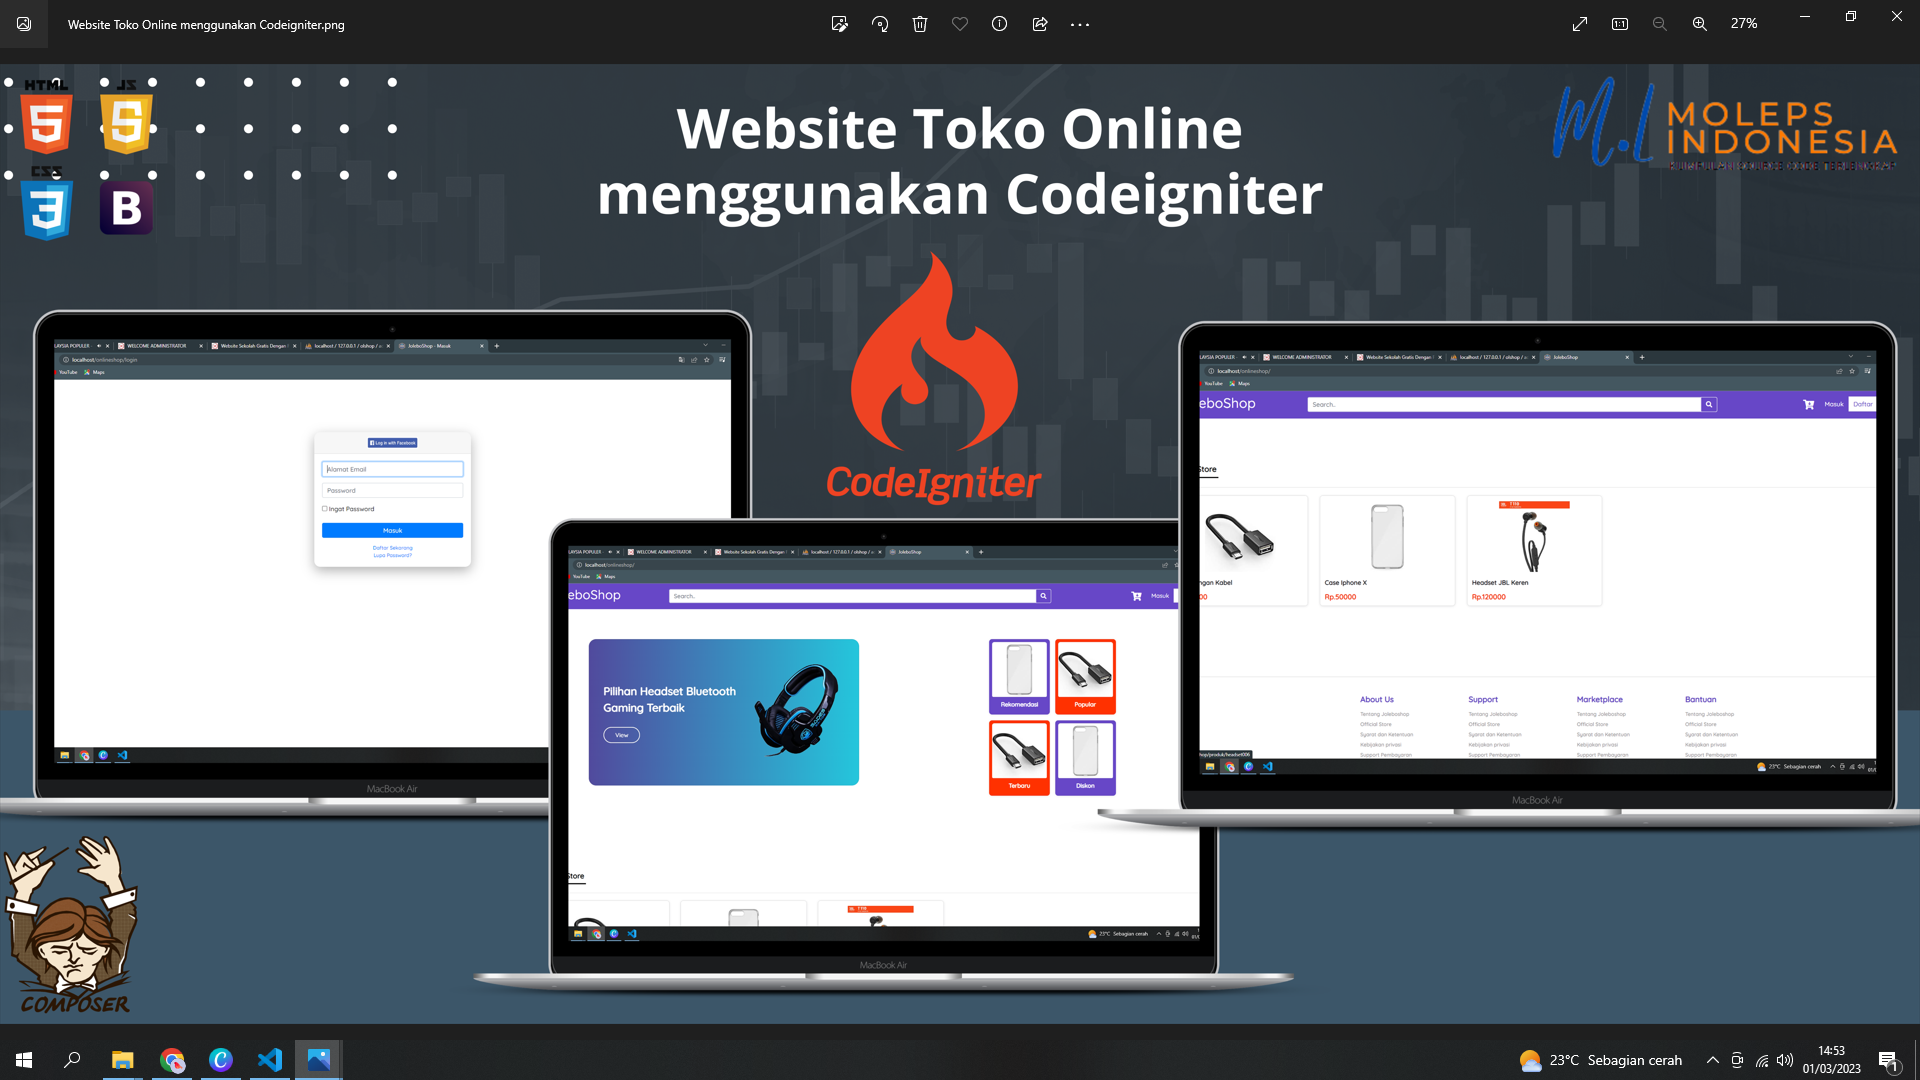 Website Toko Online menggunakan Codeigniter